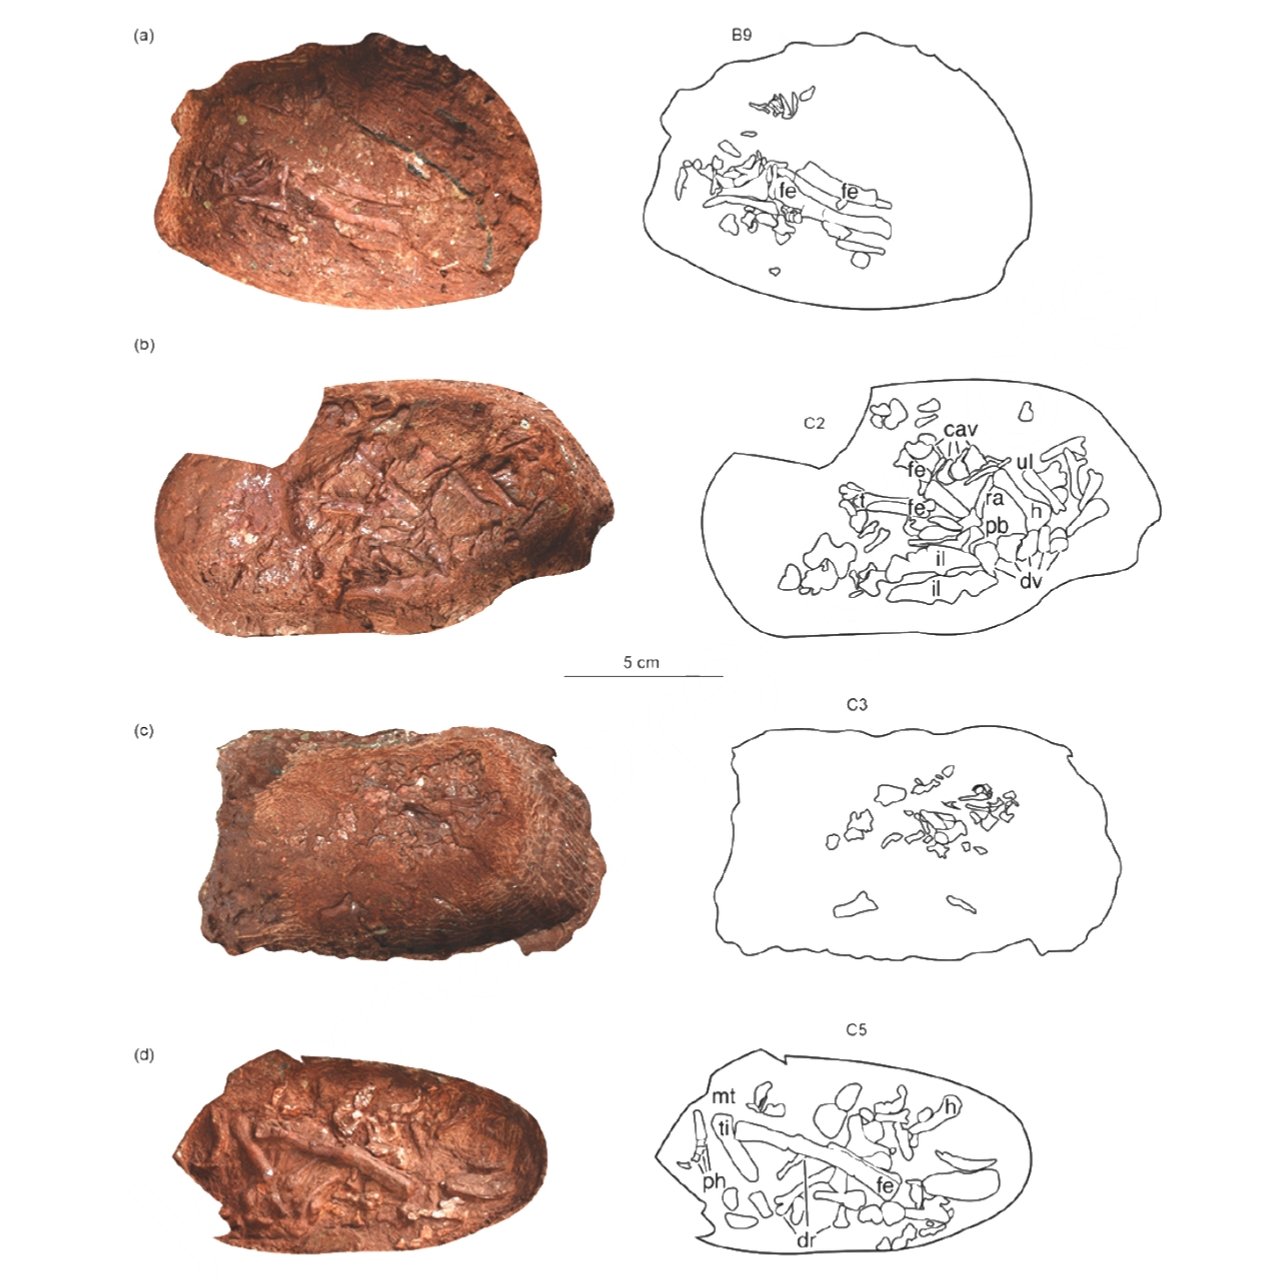 Otroligt bevarat dinosaurieembryo hittat inuti fossiliserat ägg 4